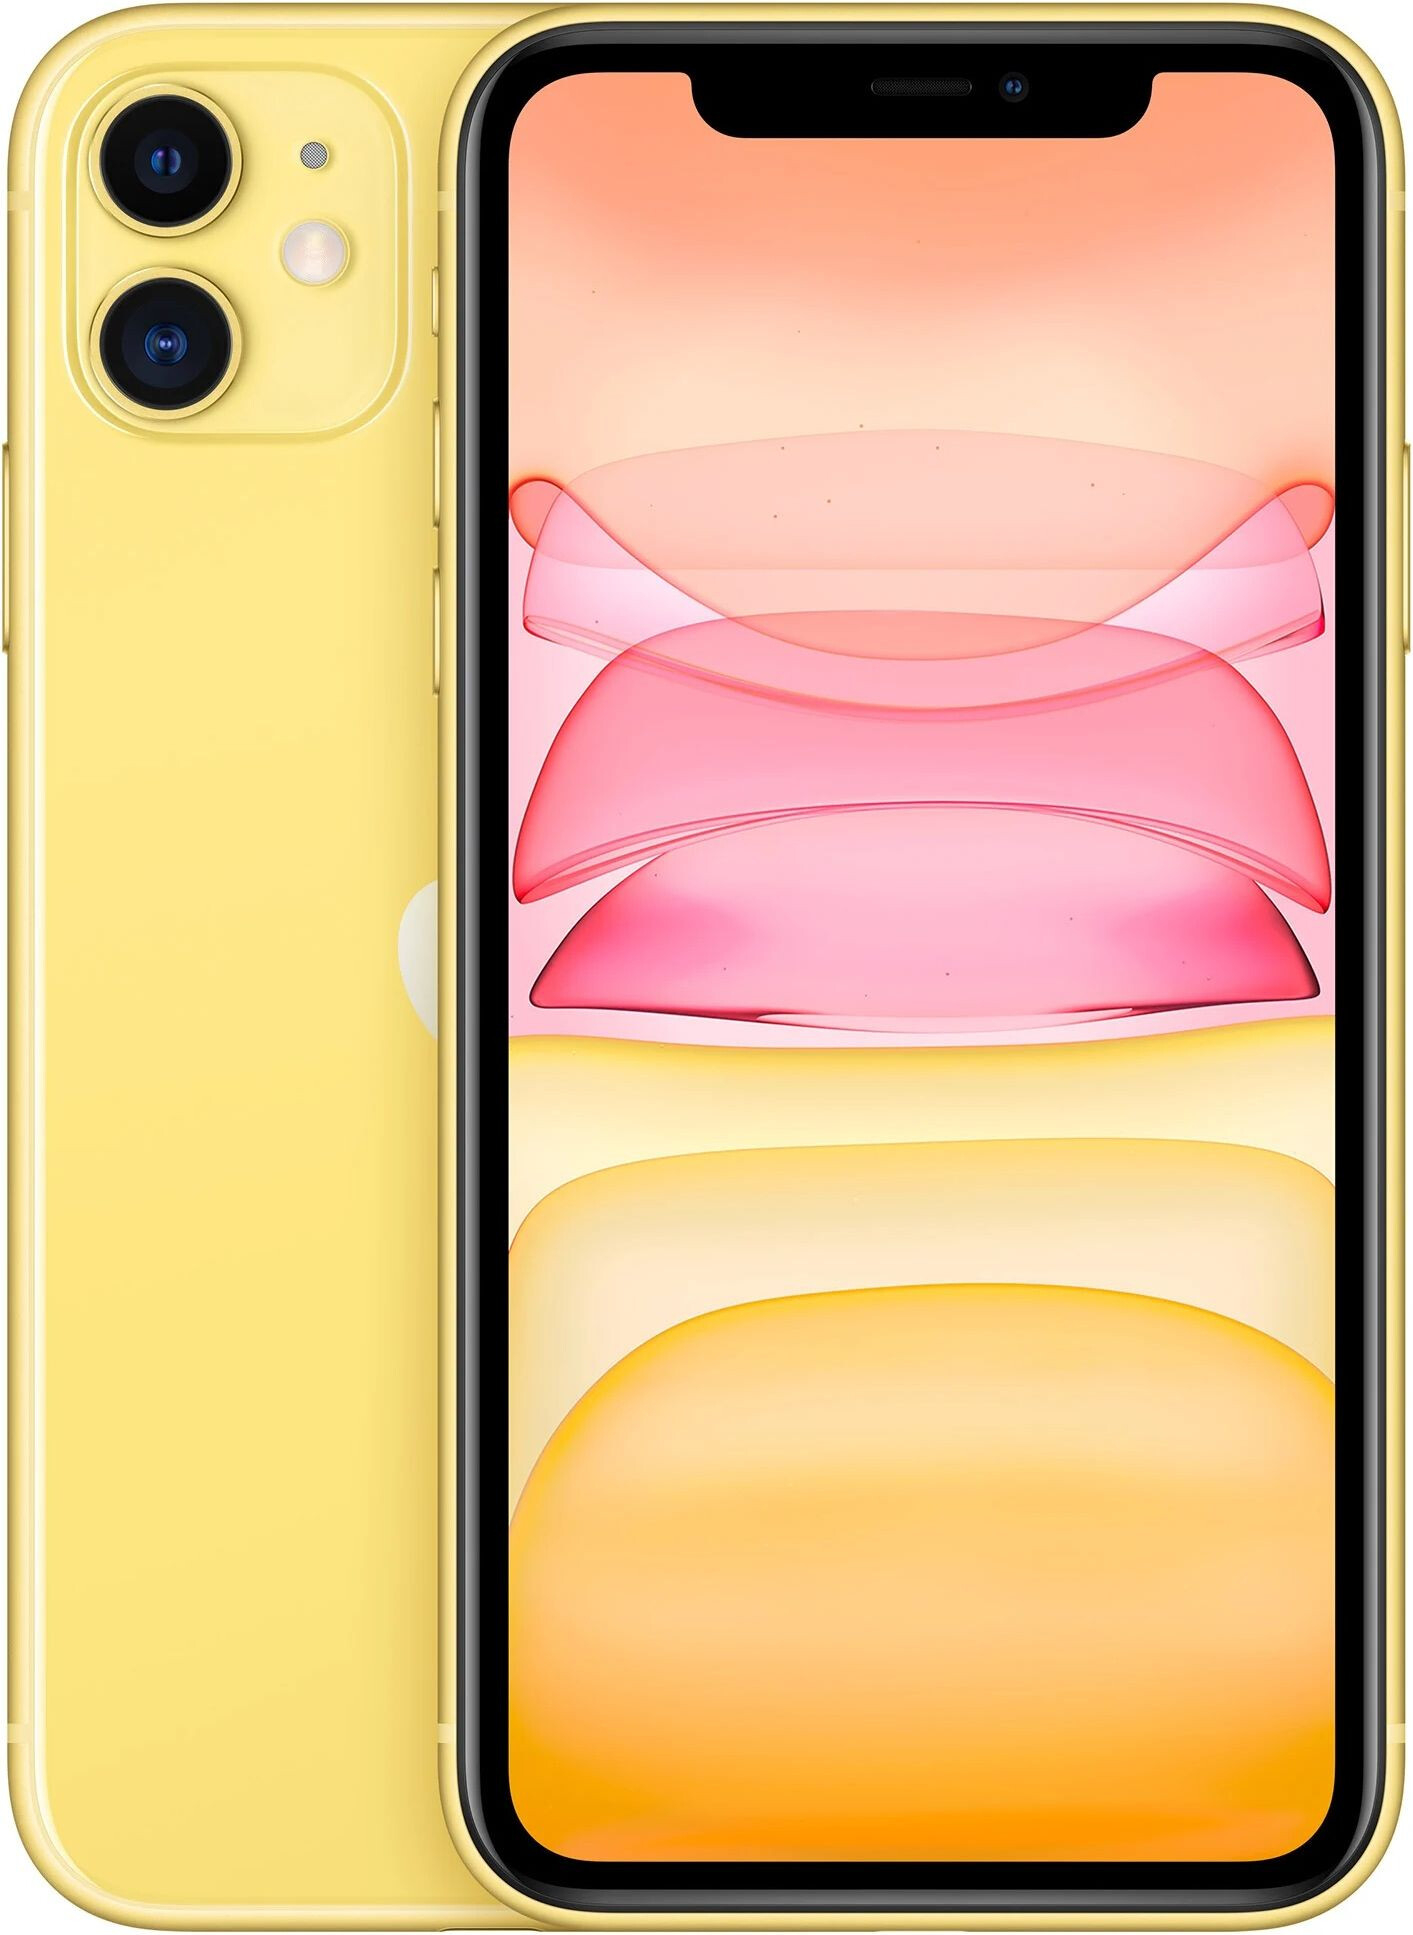 Apple iPhone 11 128GB Yellow (MWLH2)